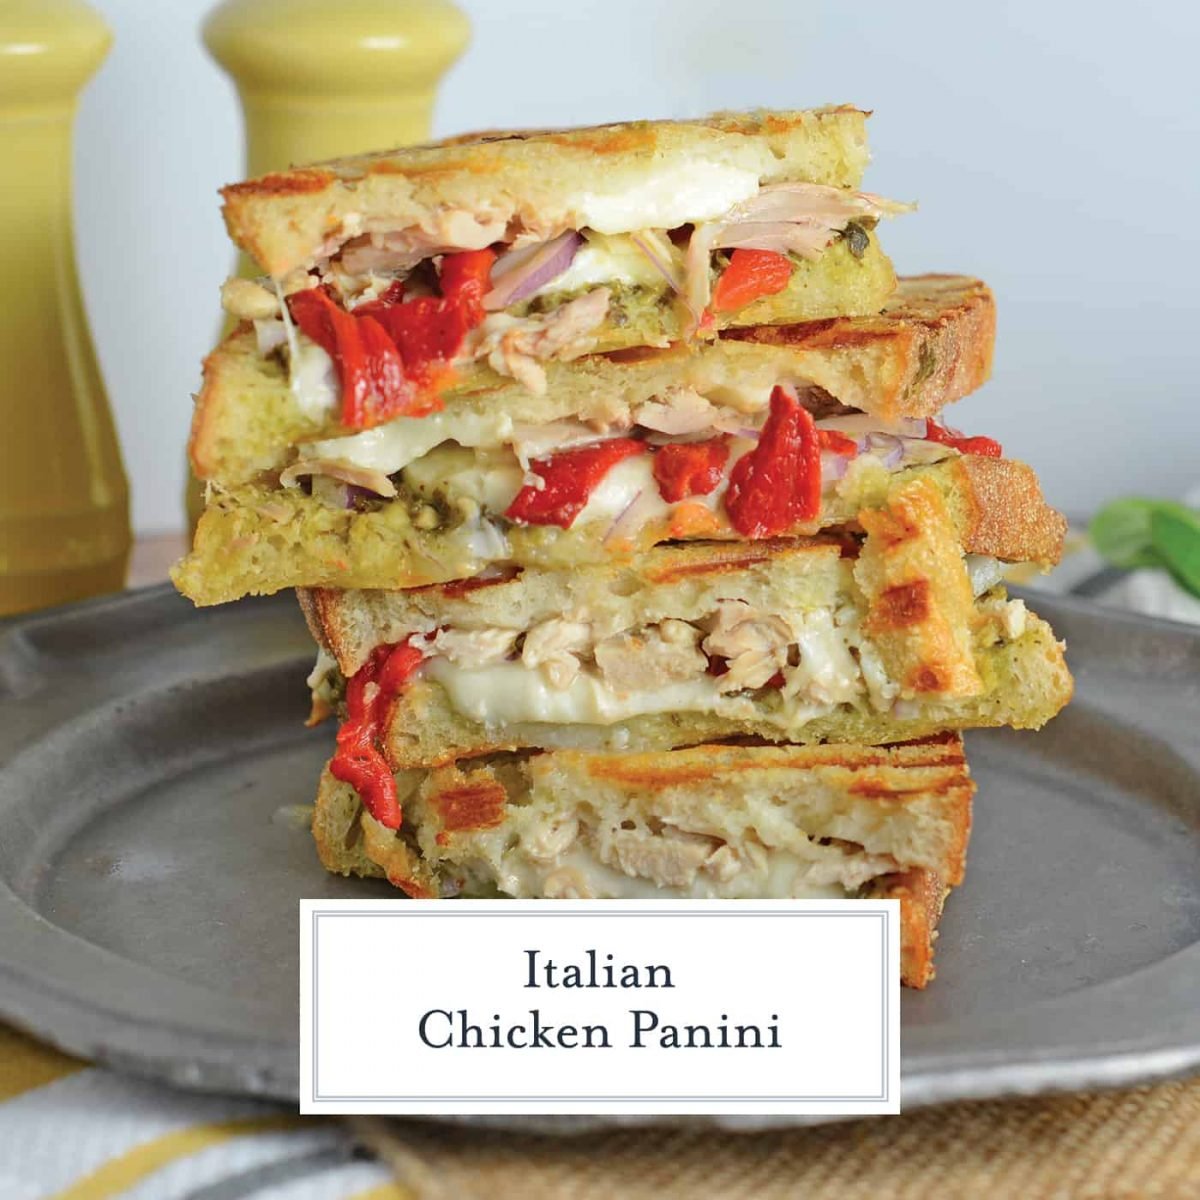 Italian Chicken Panini - The Best Chicken Panini Sandwich Recipe